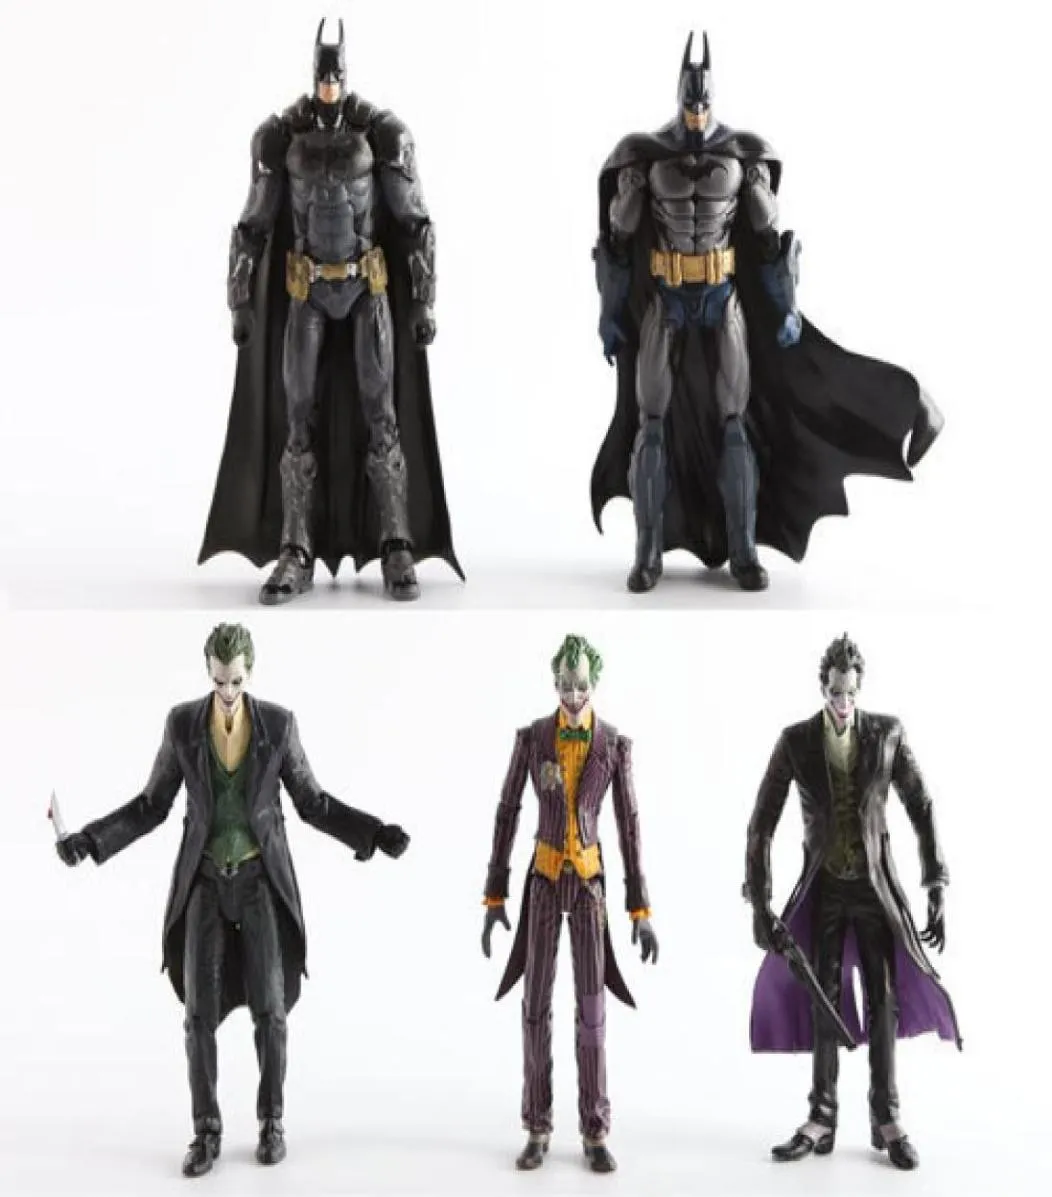 Original DC Batman The Joker PVC Action Figure Collection Model Toy 7Inch 18cm 15 Styles C190415012371196